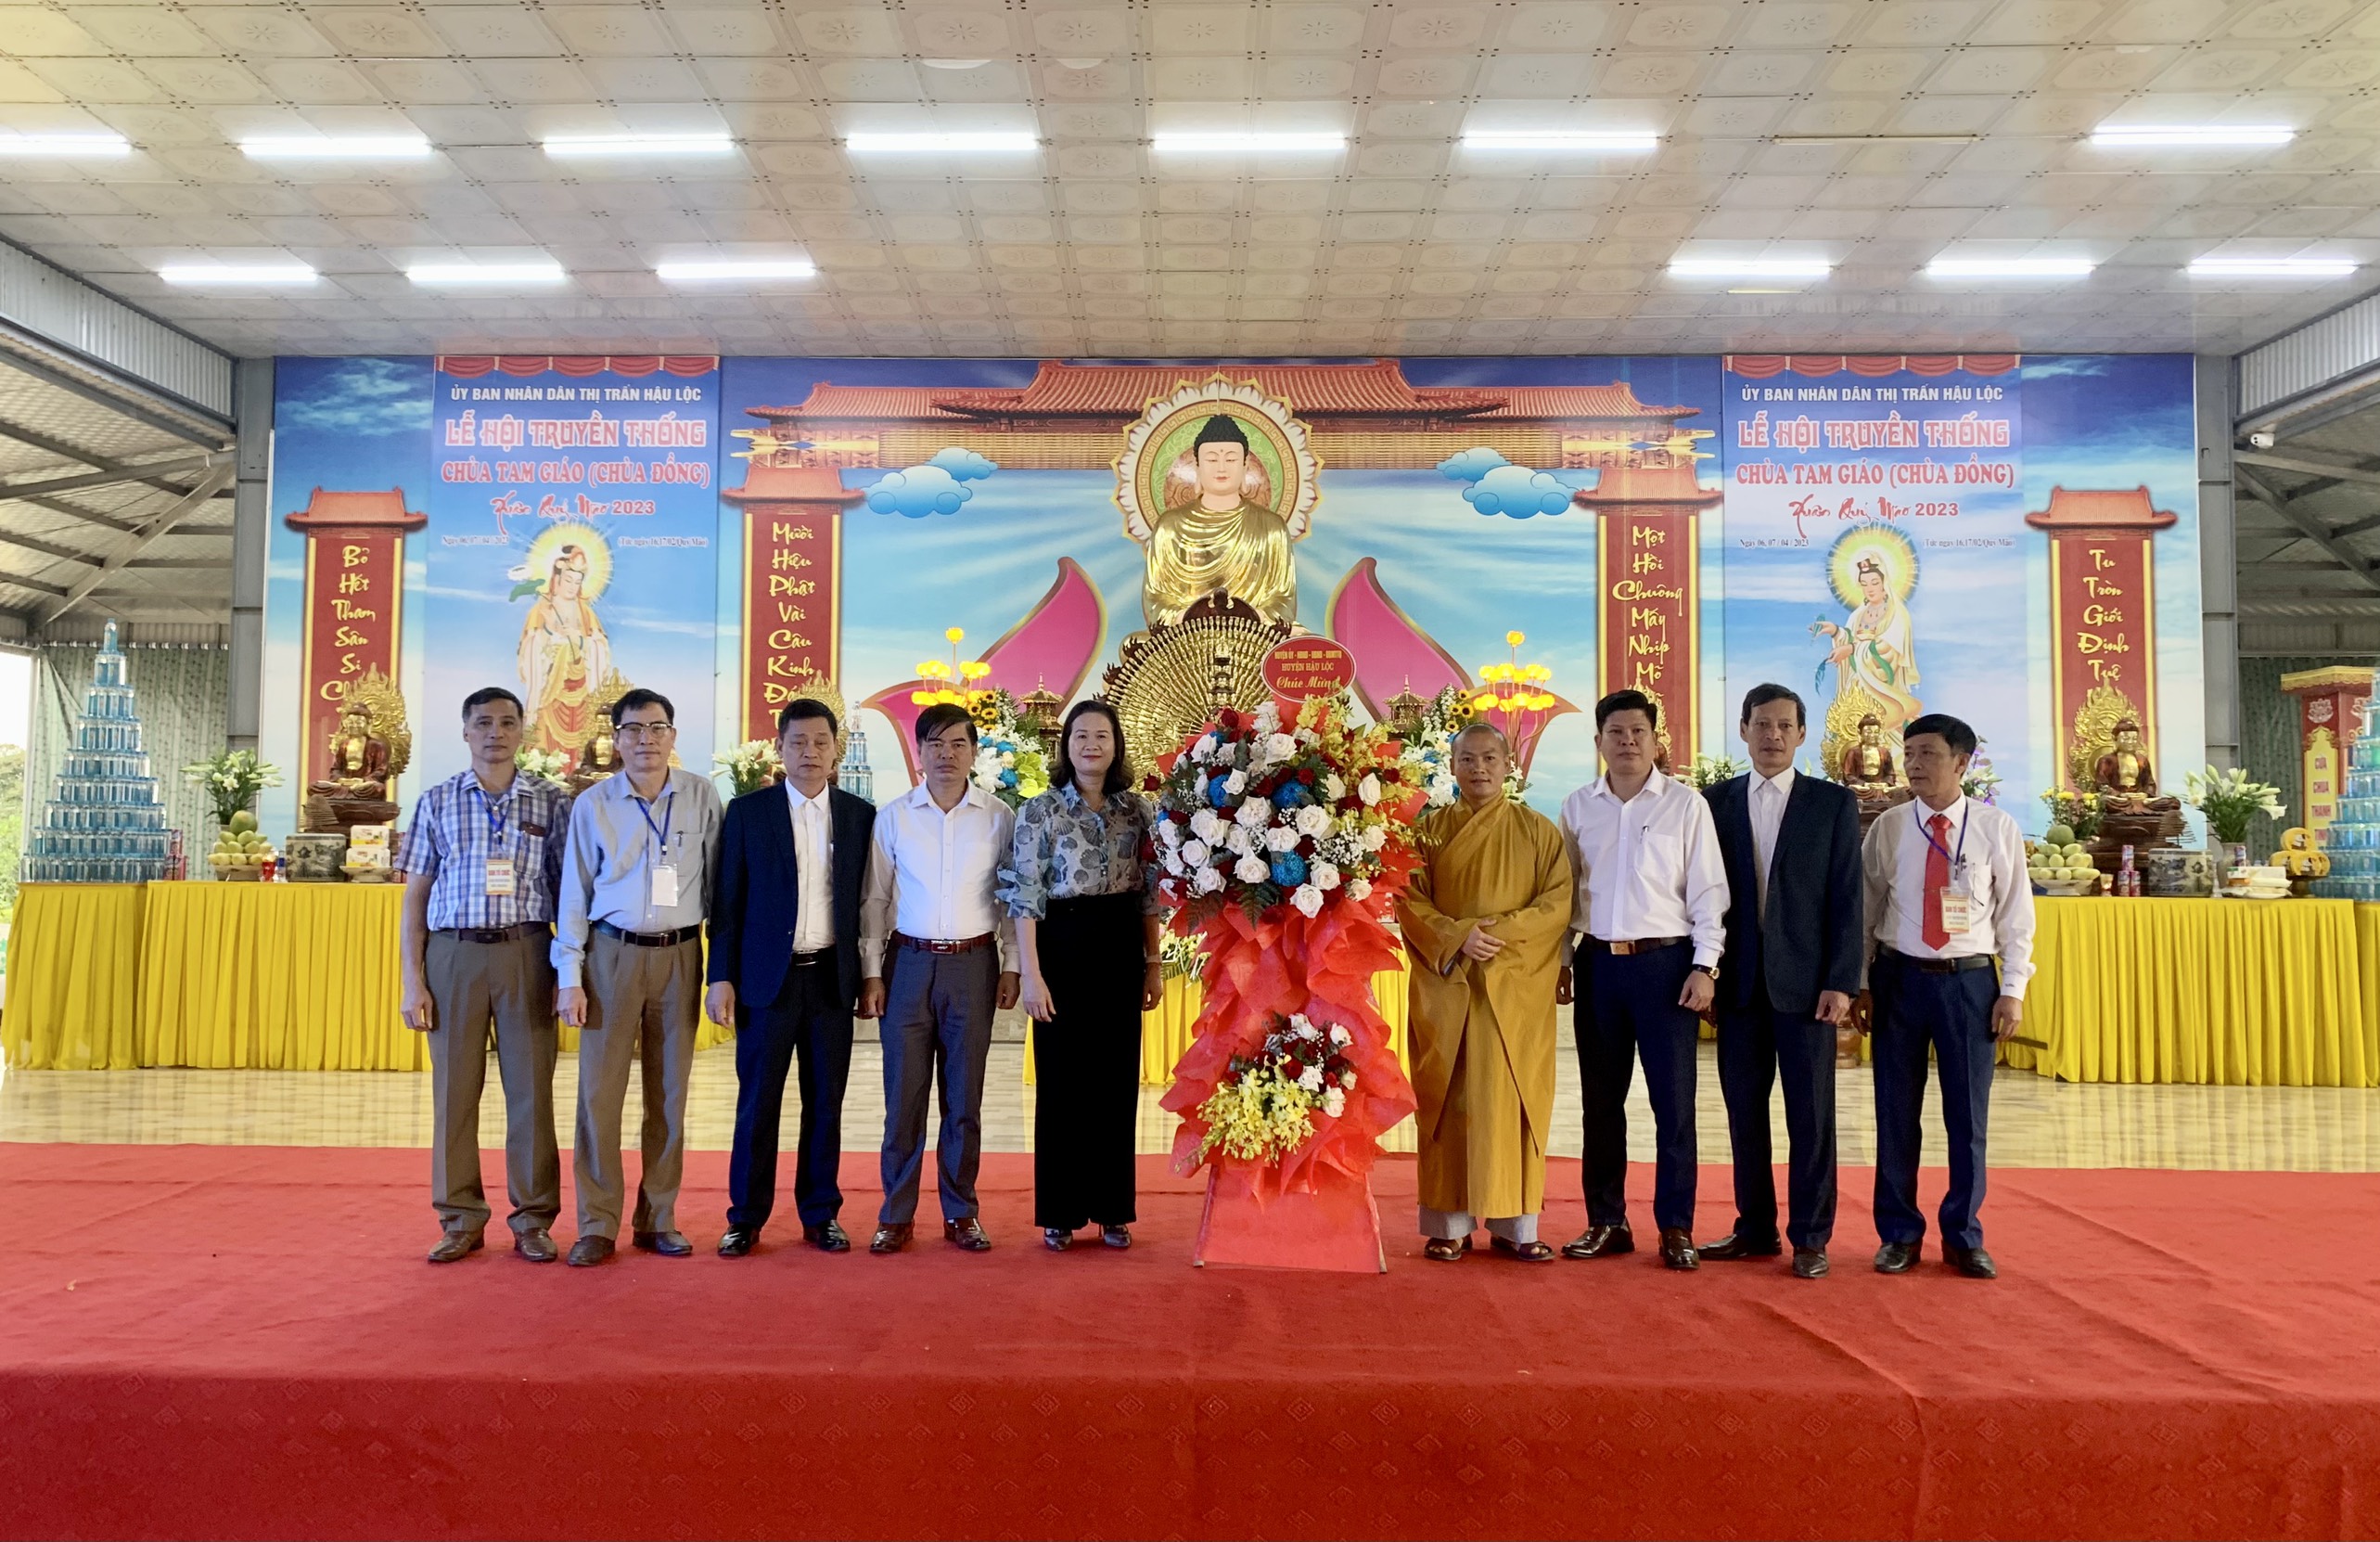 Sáng ngày 7/4 (tức ngày 17/2 âm lich), thị trấn Hậu Lộc long trọng tổ chức Lễ hội truyền thống Chùa Tam Giáo năm 2023